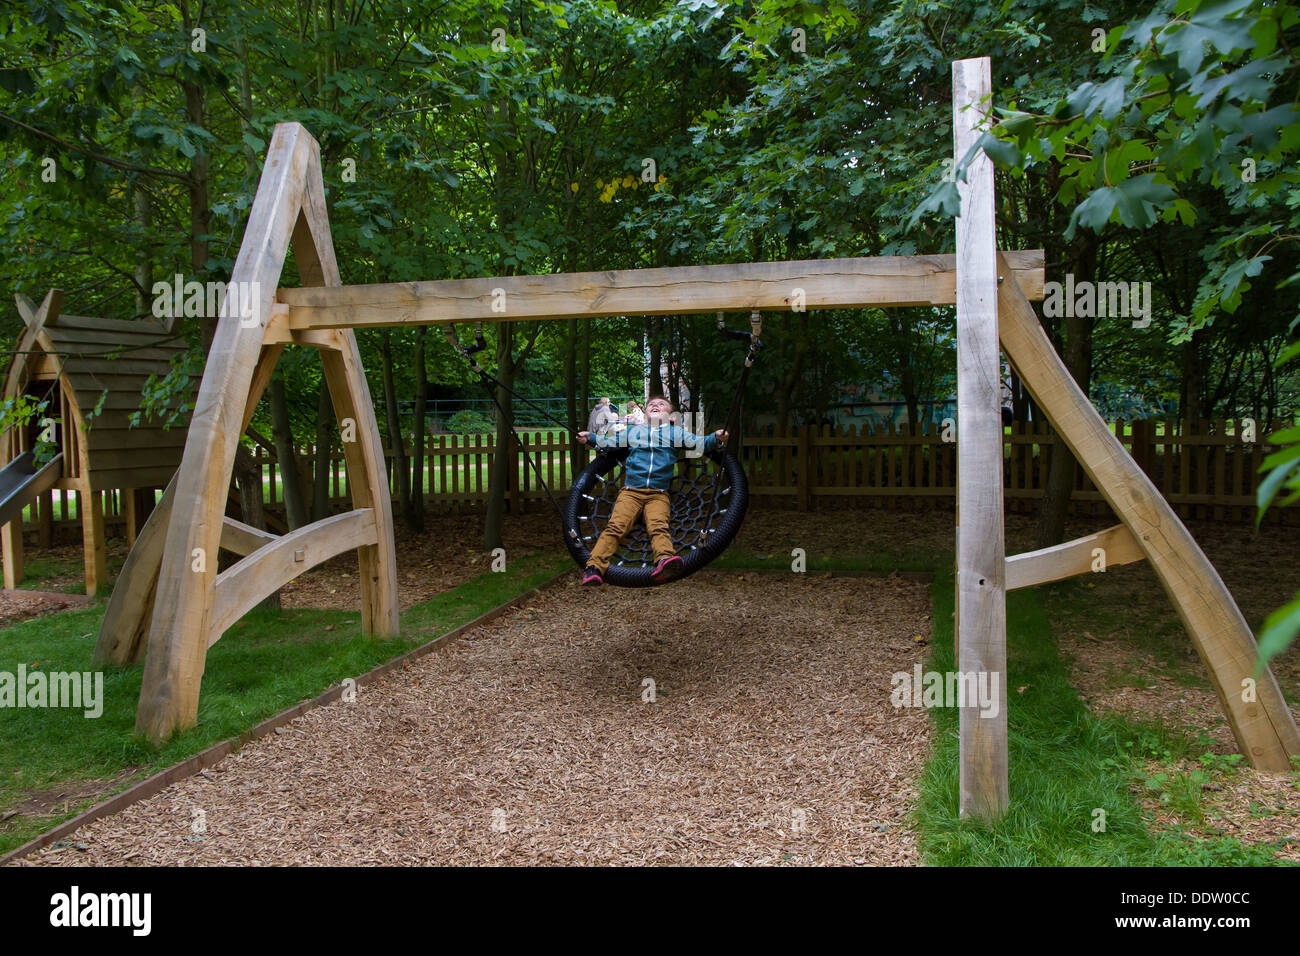 Kleiner Junge spielt auf das Spielen Wildnisgebiet Witley Gericht and Gardens in Worcestershire. Stockfoto